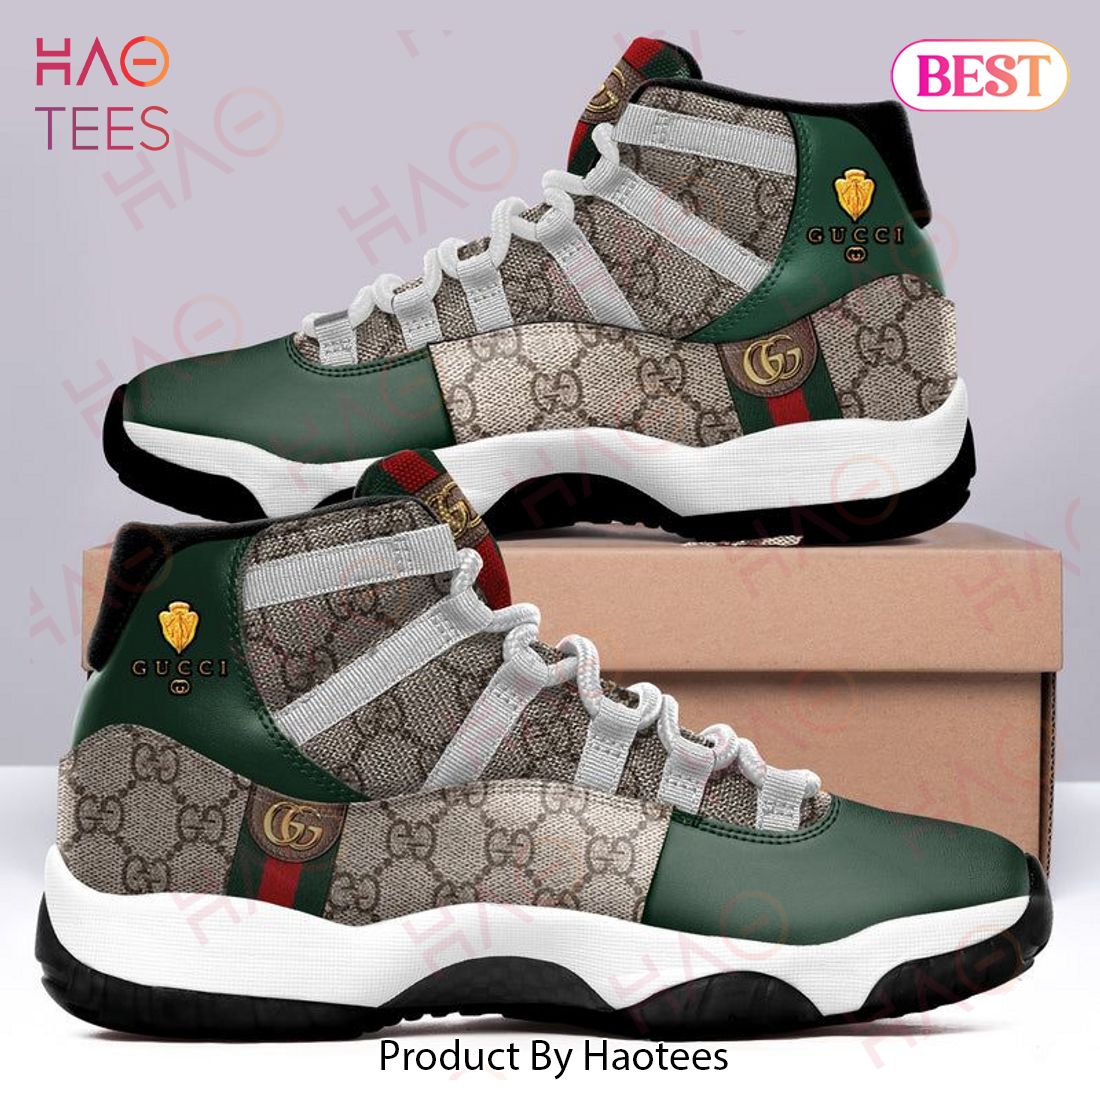 Gucci Air Jordan 11 Sneakers Shoes Hot 2022 For Men Women